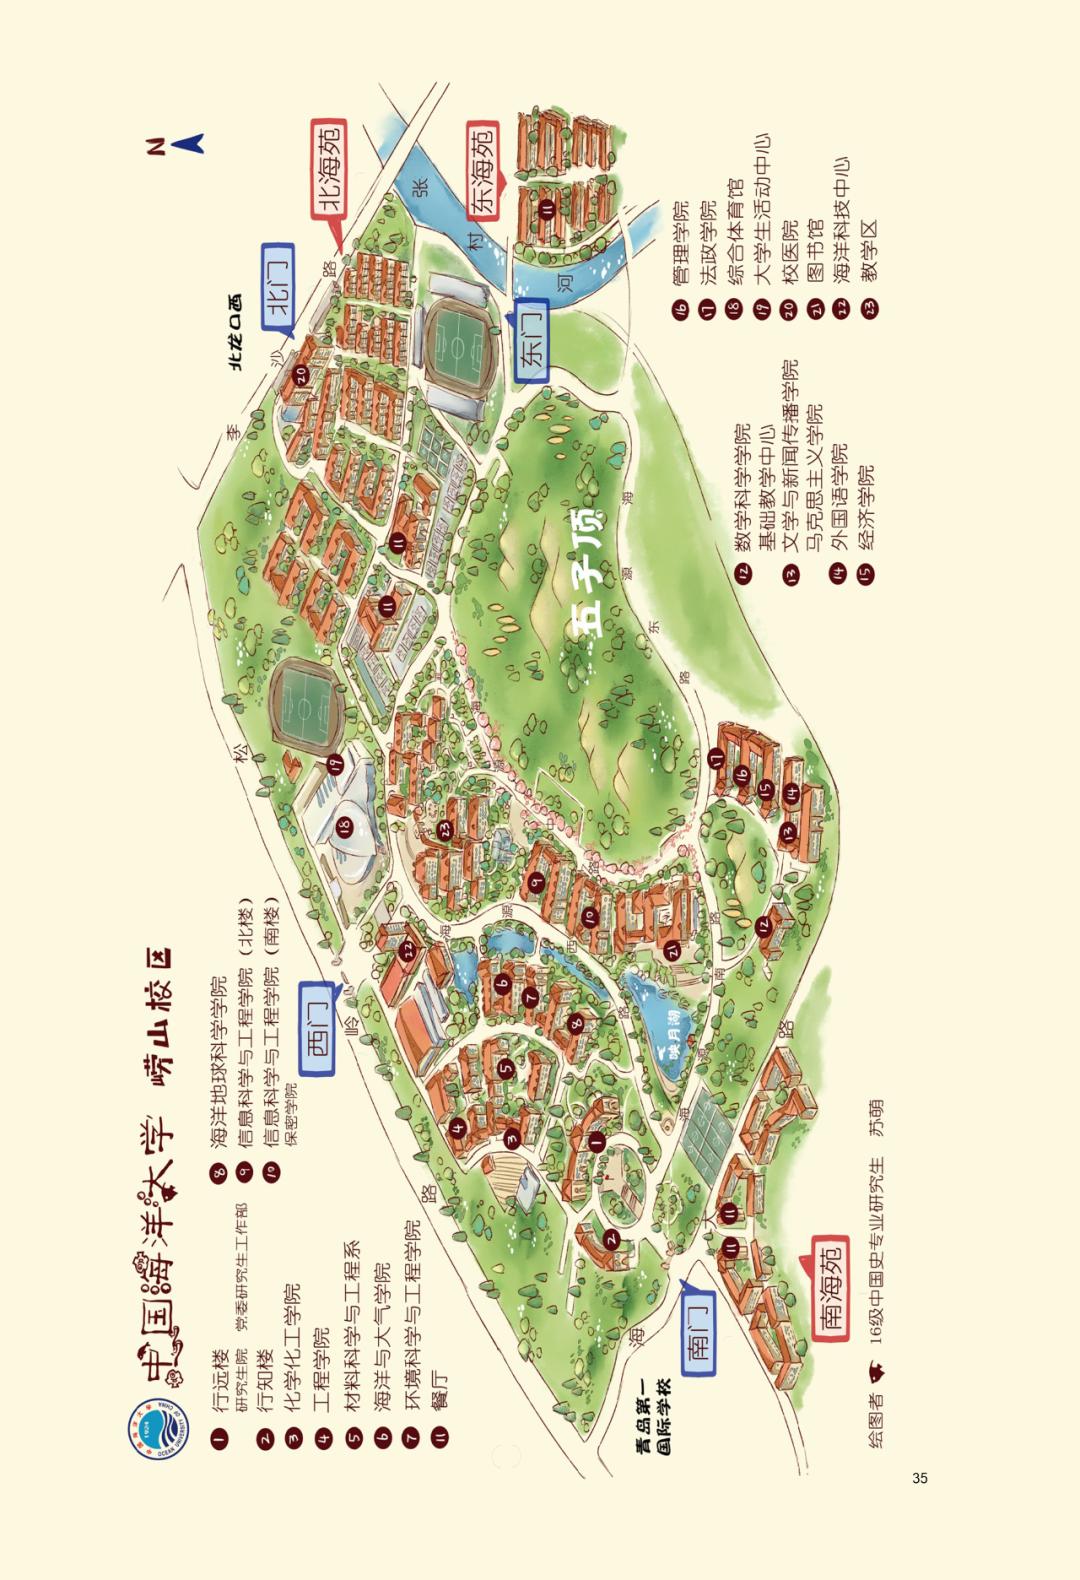 广东海洋大学地图图片